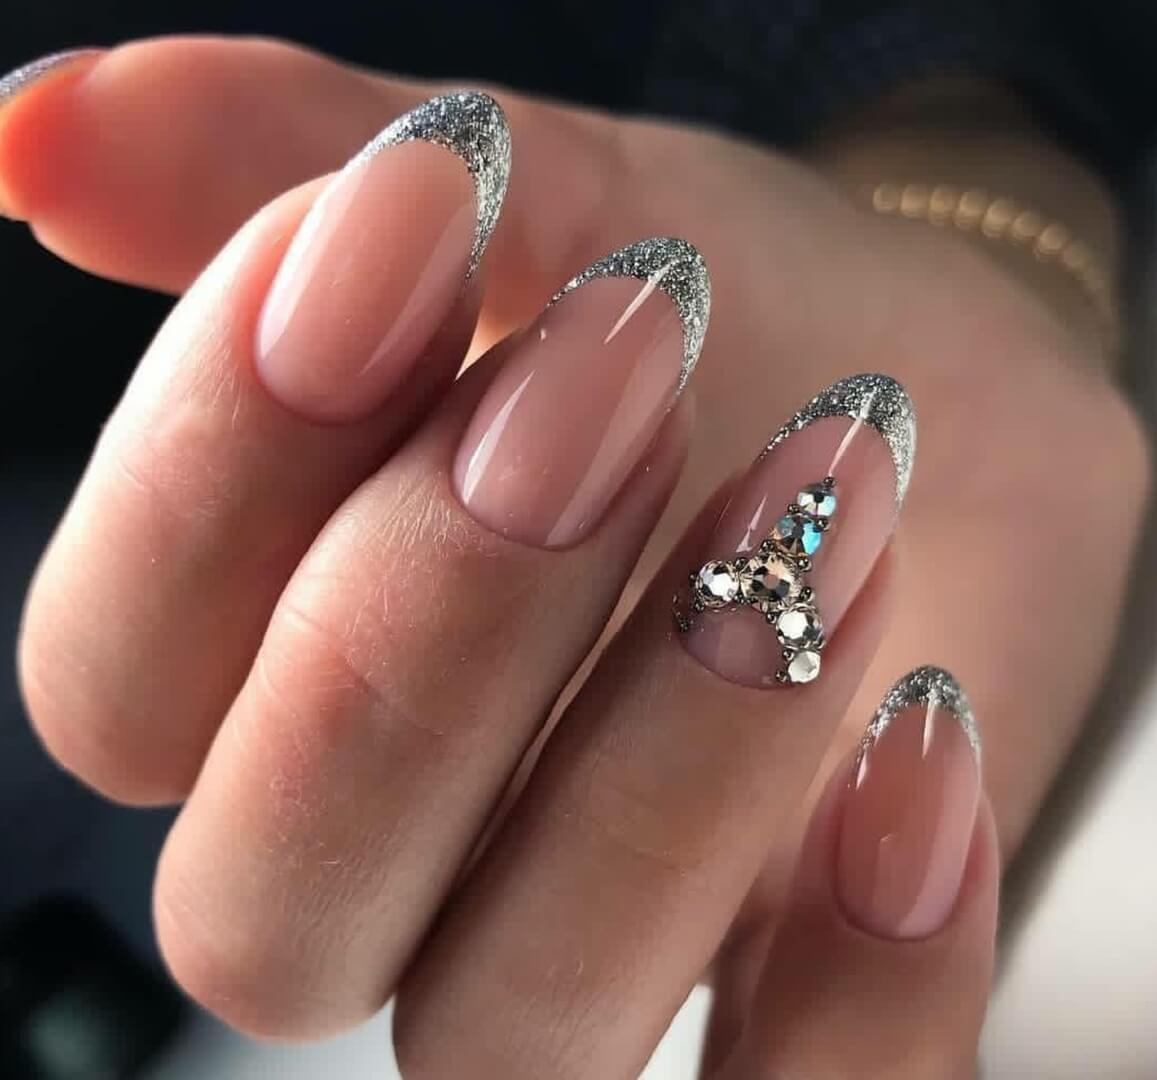 Shiny french nails